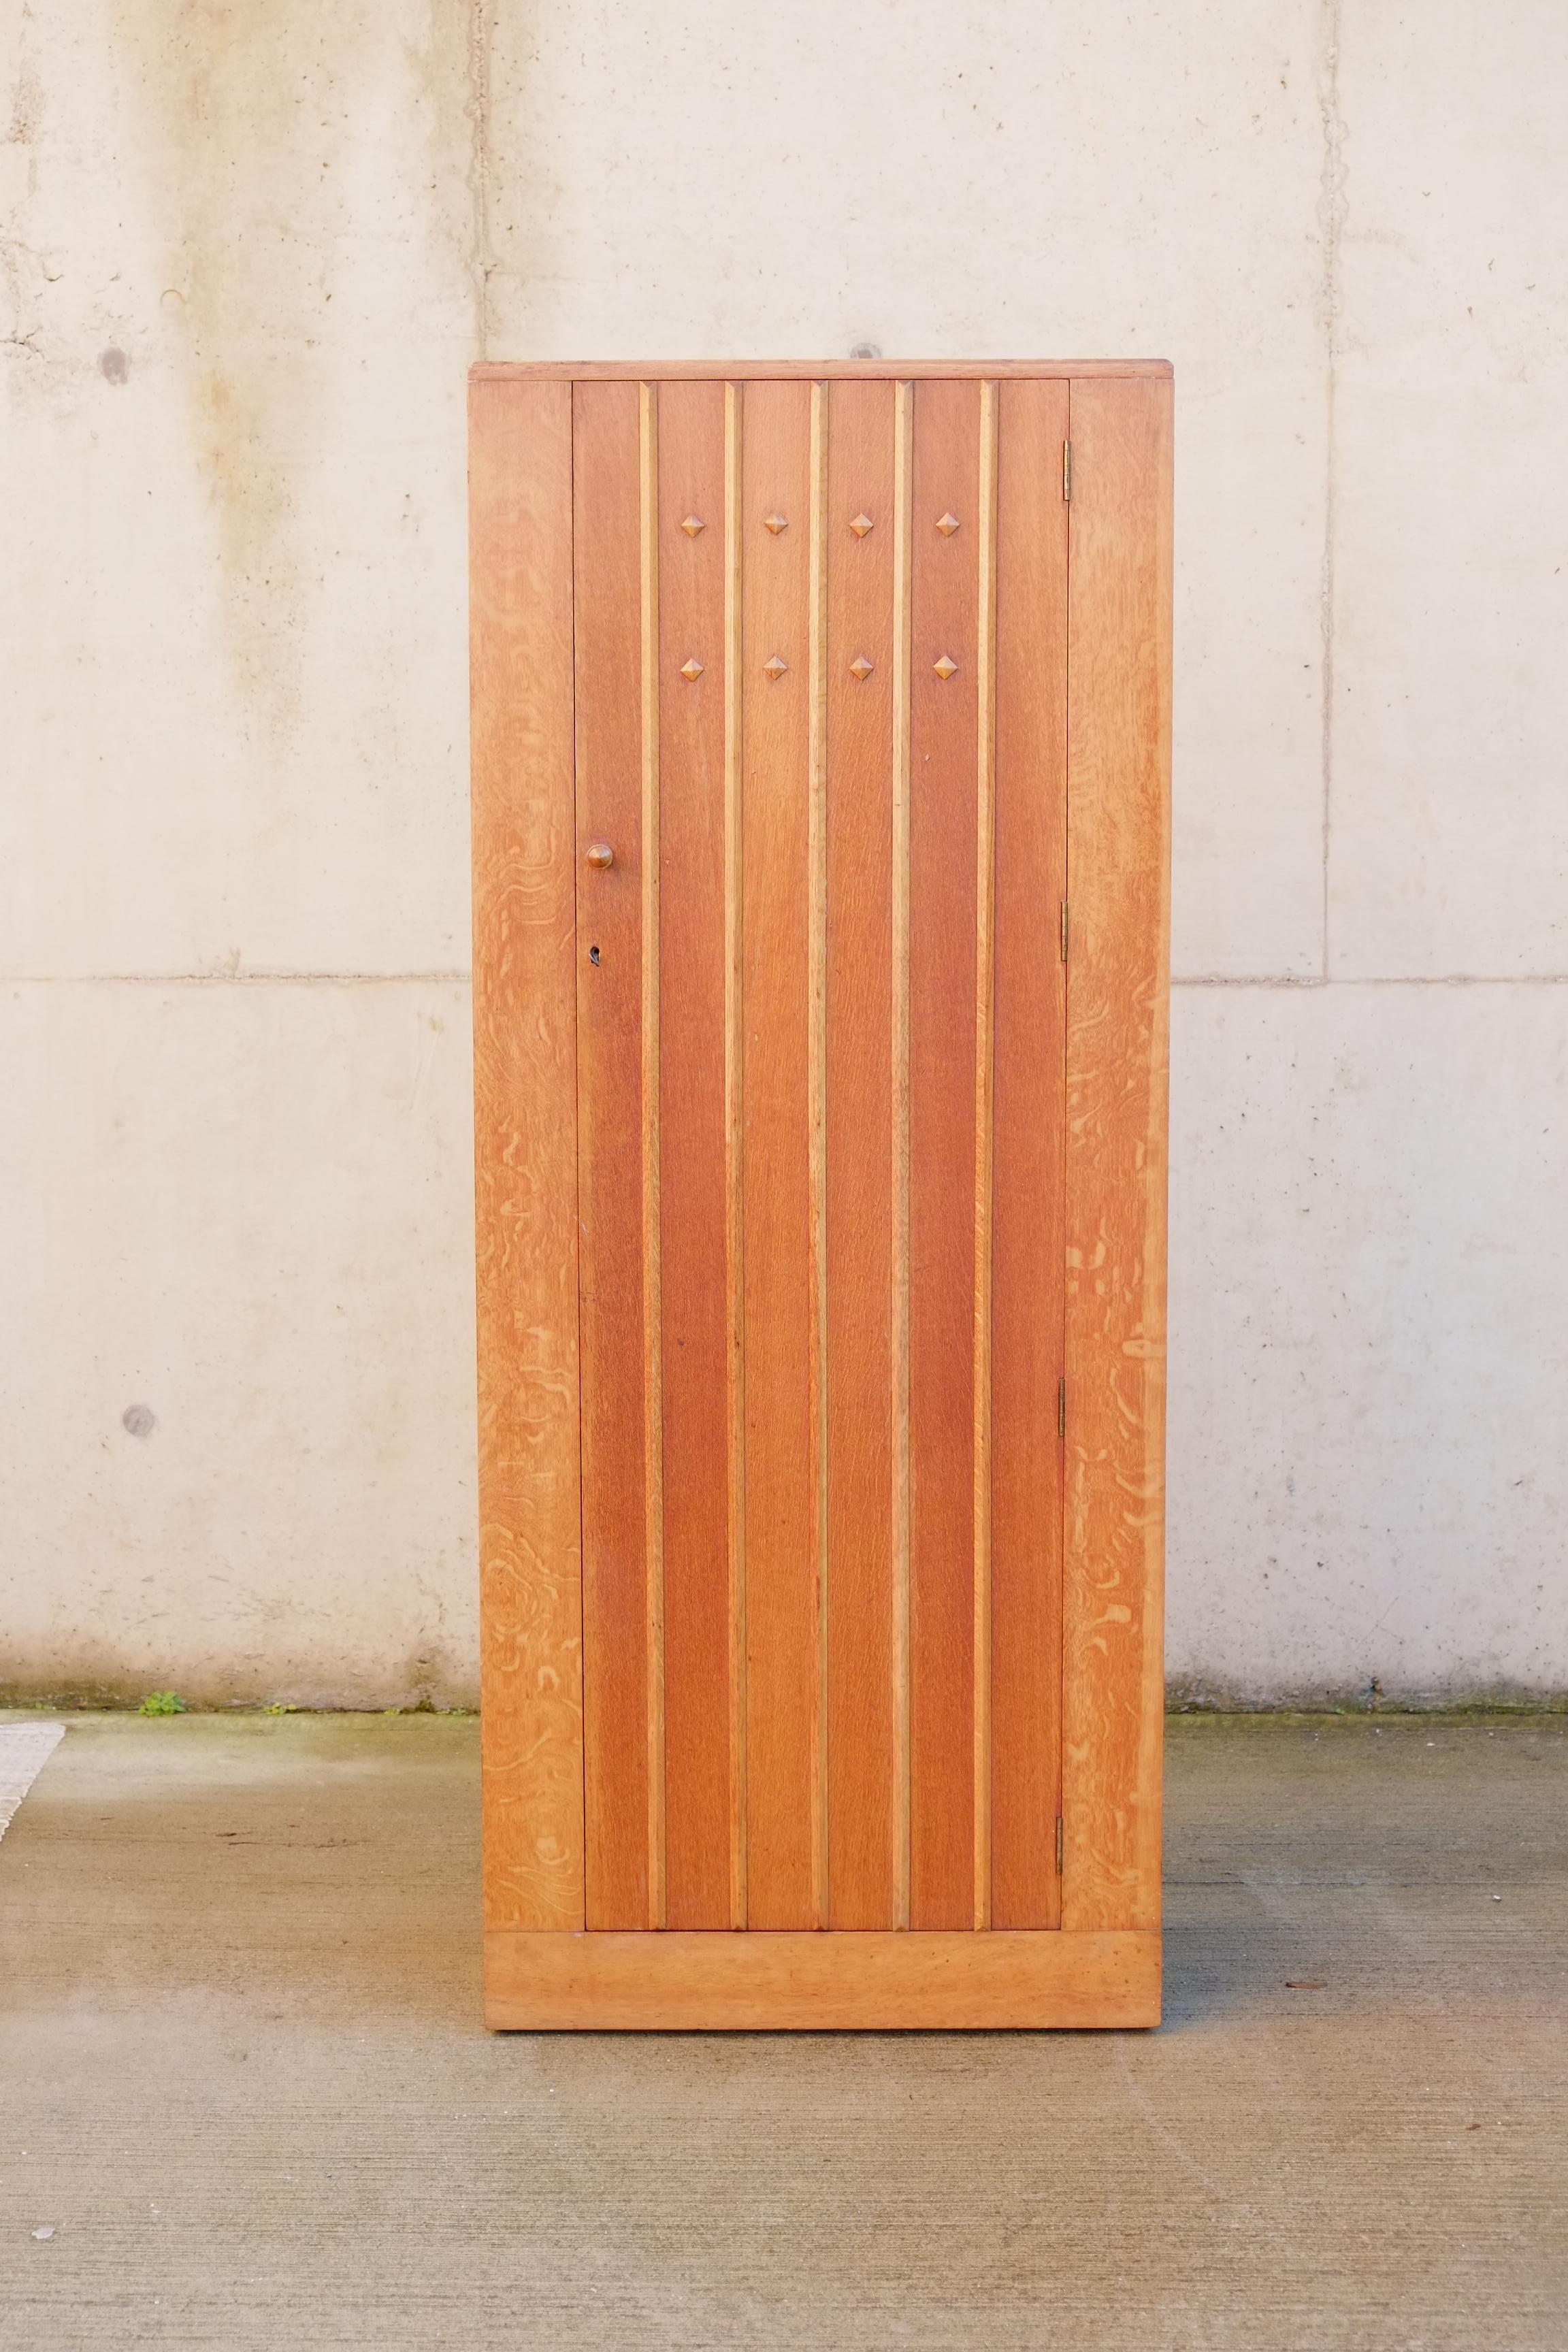 Ein eleganter, hoher, schmaler Kleiderschrank, hergestellt in England um 1940. Der Schrank besteht aus einer hellen Eichenvertäfelung mit einem schönen Paneel und Rautendetails an der Türfront. Im Inneren befinden sich ein einzelnes Regal und die